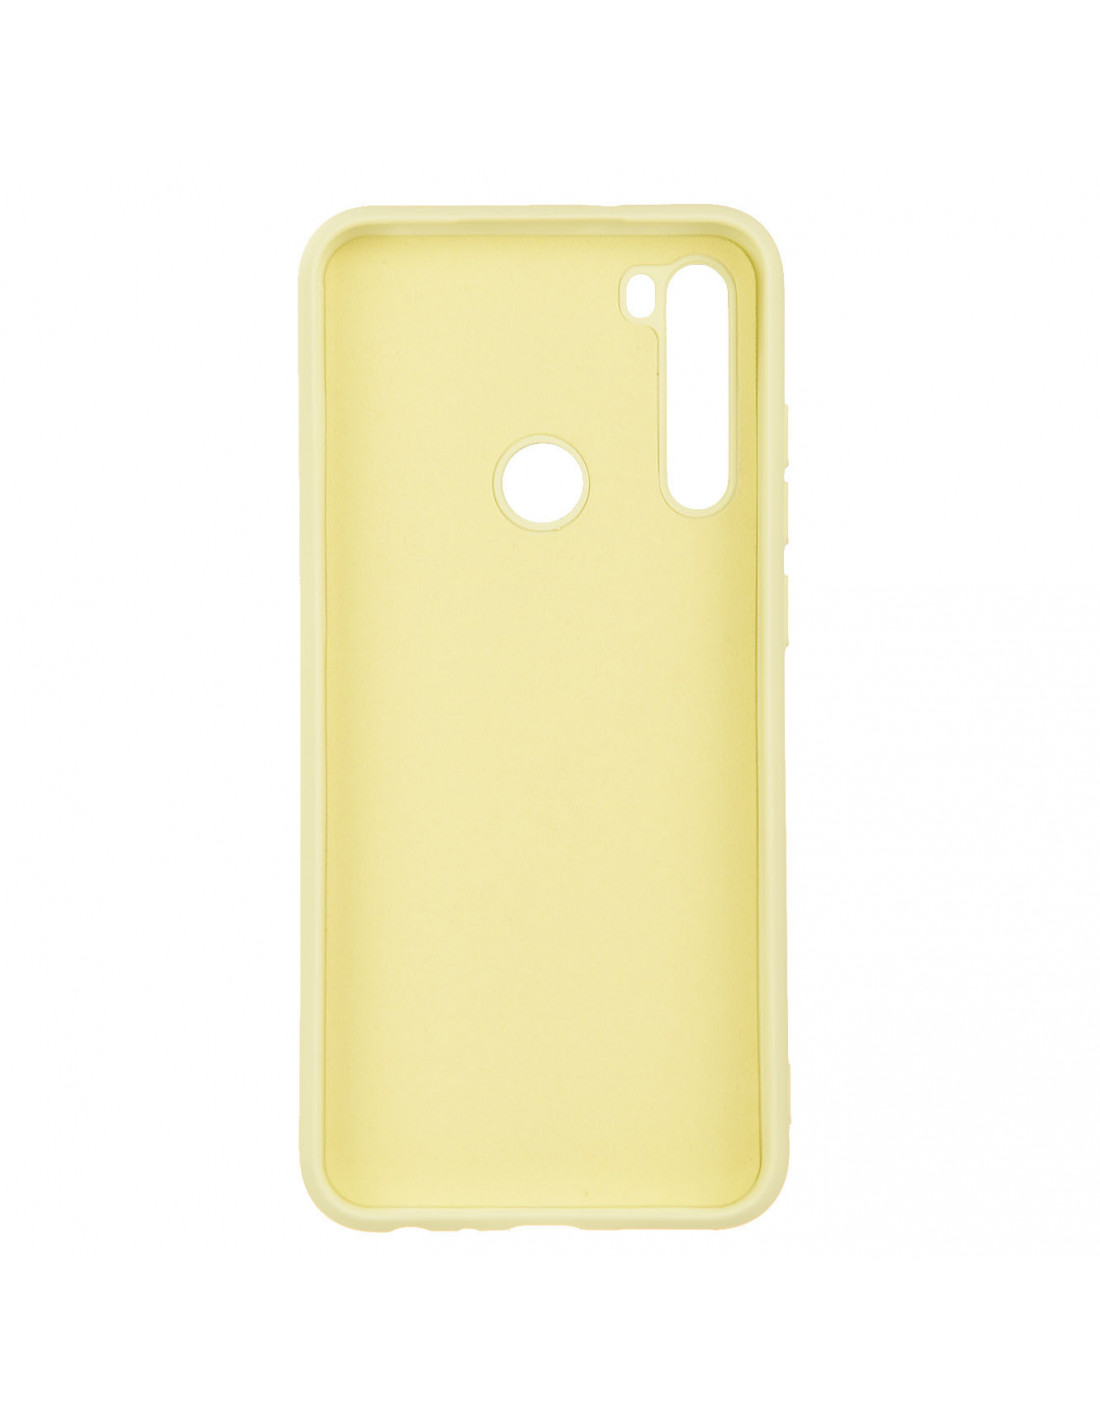 Funda suave y de color para el Xiaomi Redmi Note/Note 8 2021